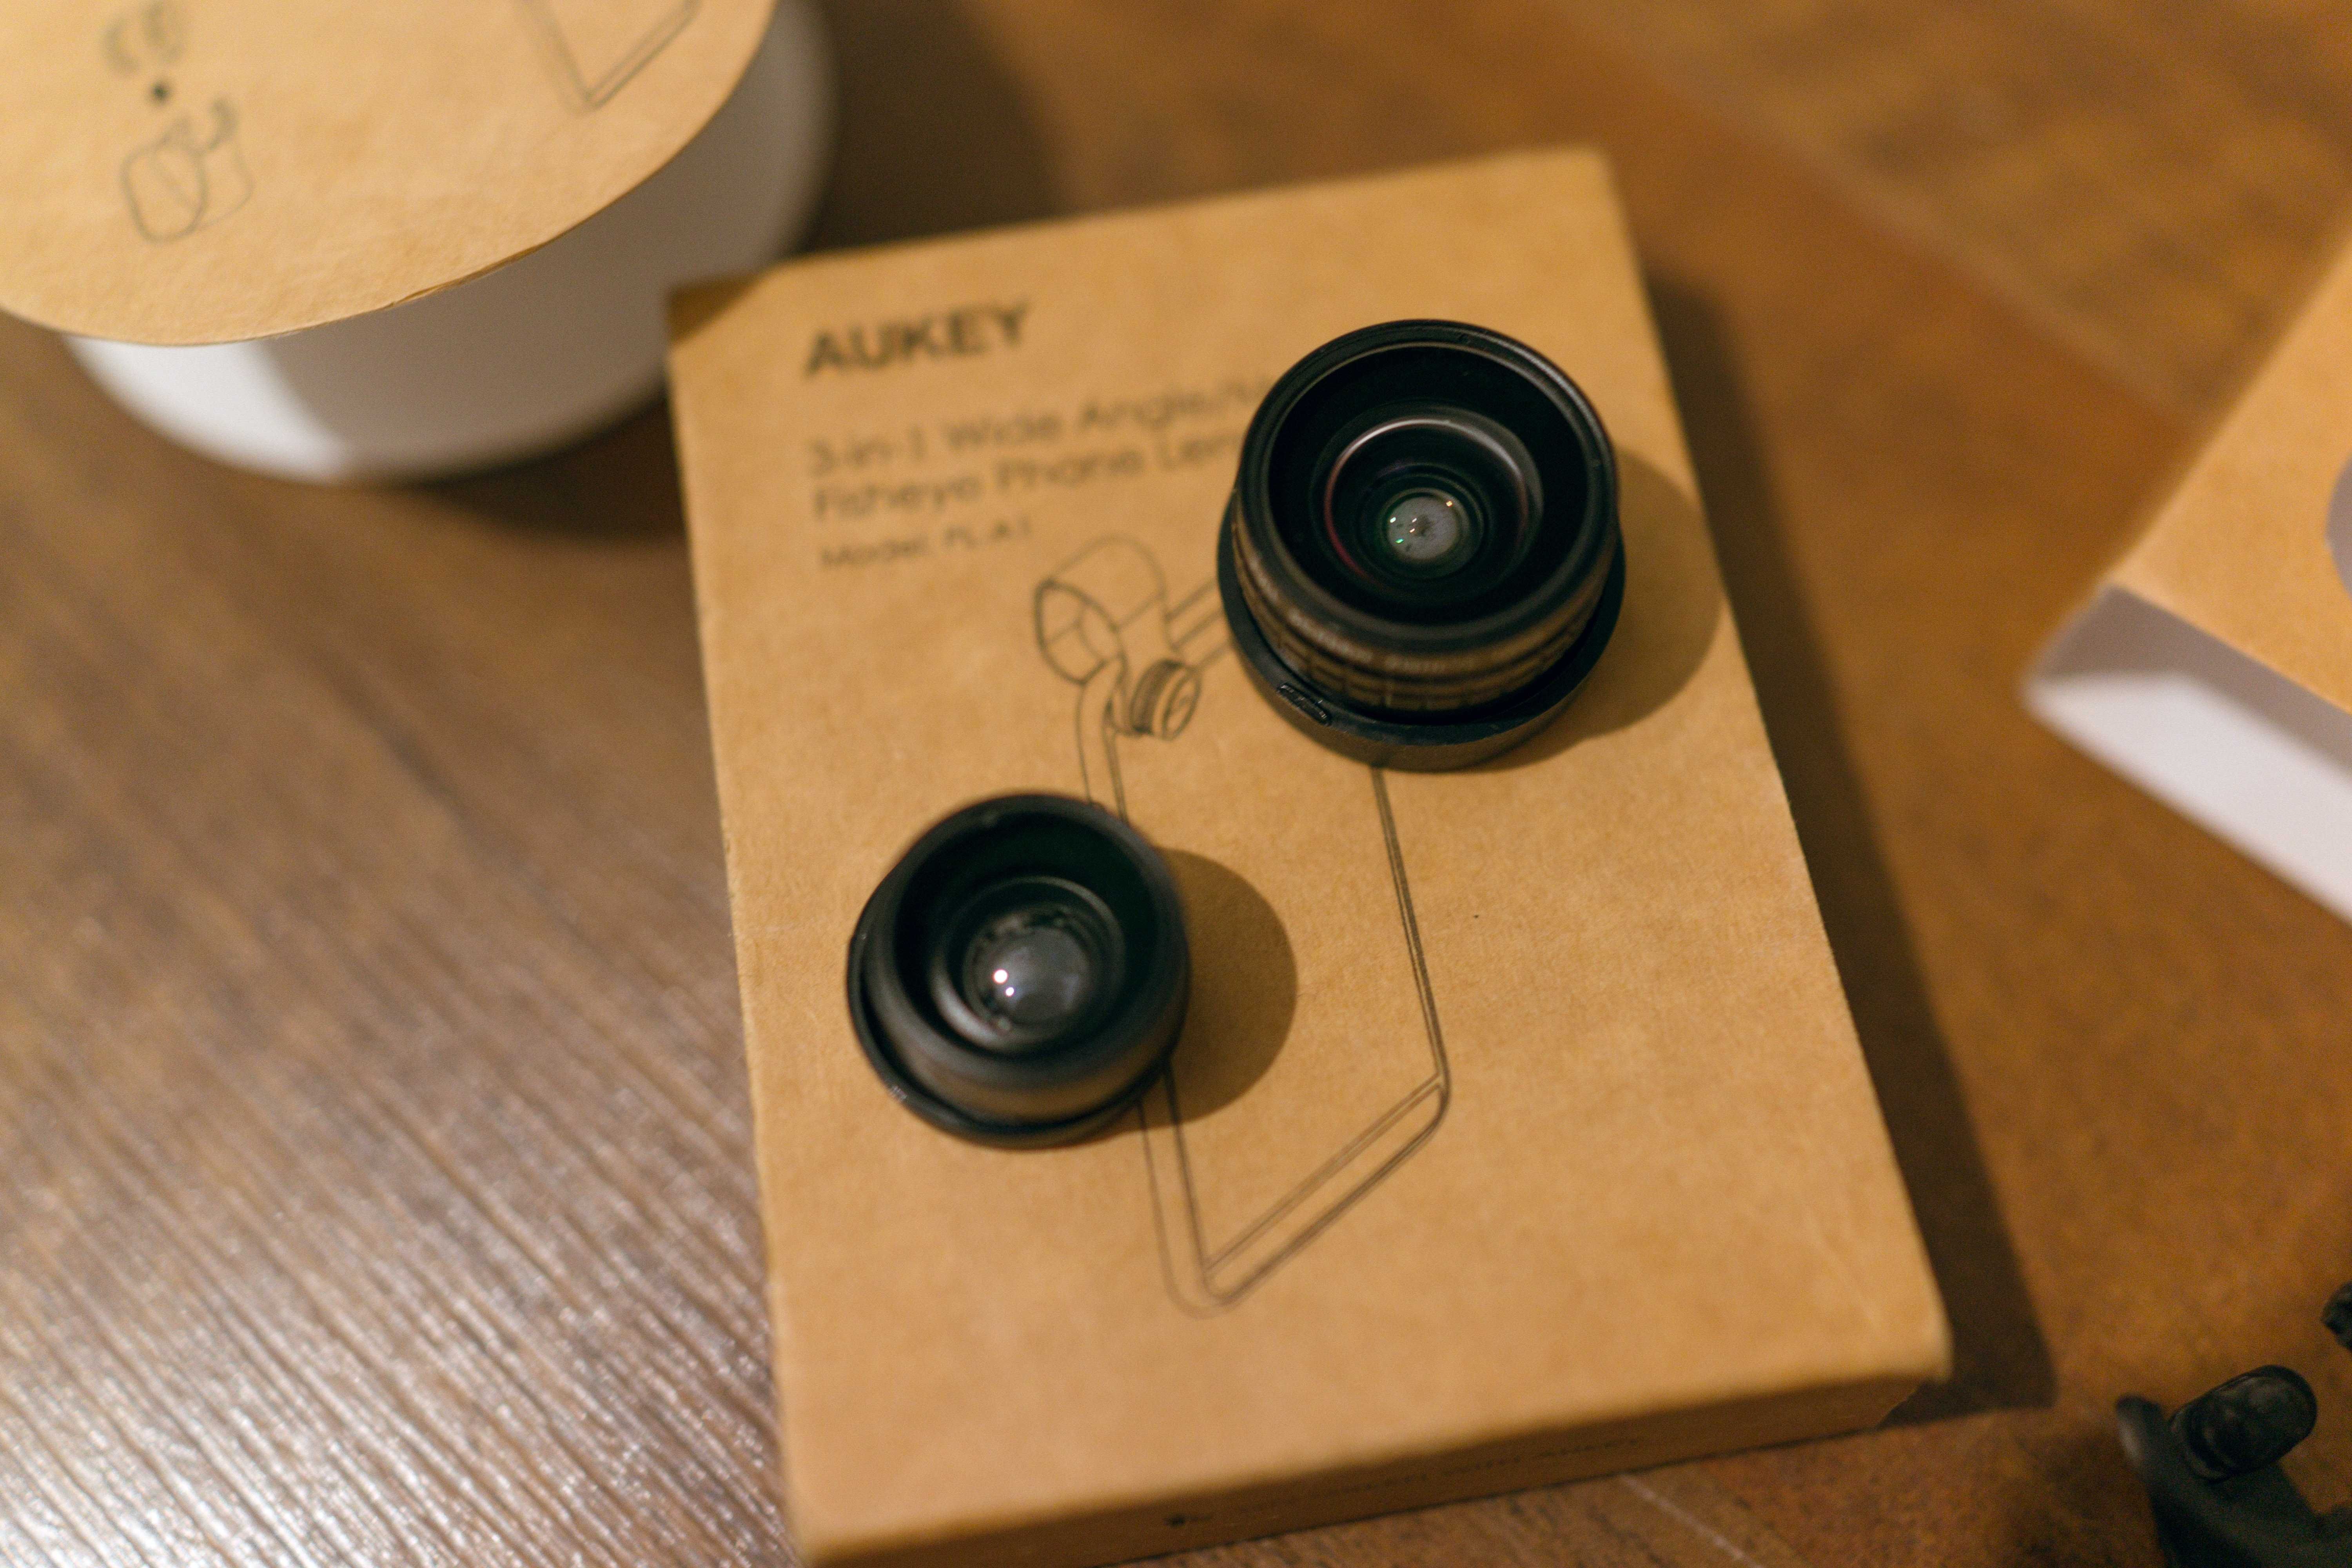 Obiektywy do telefonu Aukey PL-01 fisheye, macro, wide x0,67